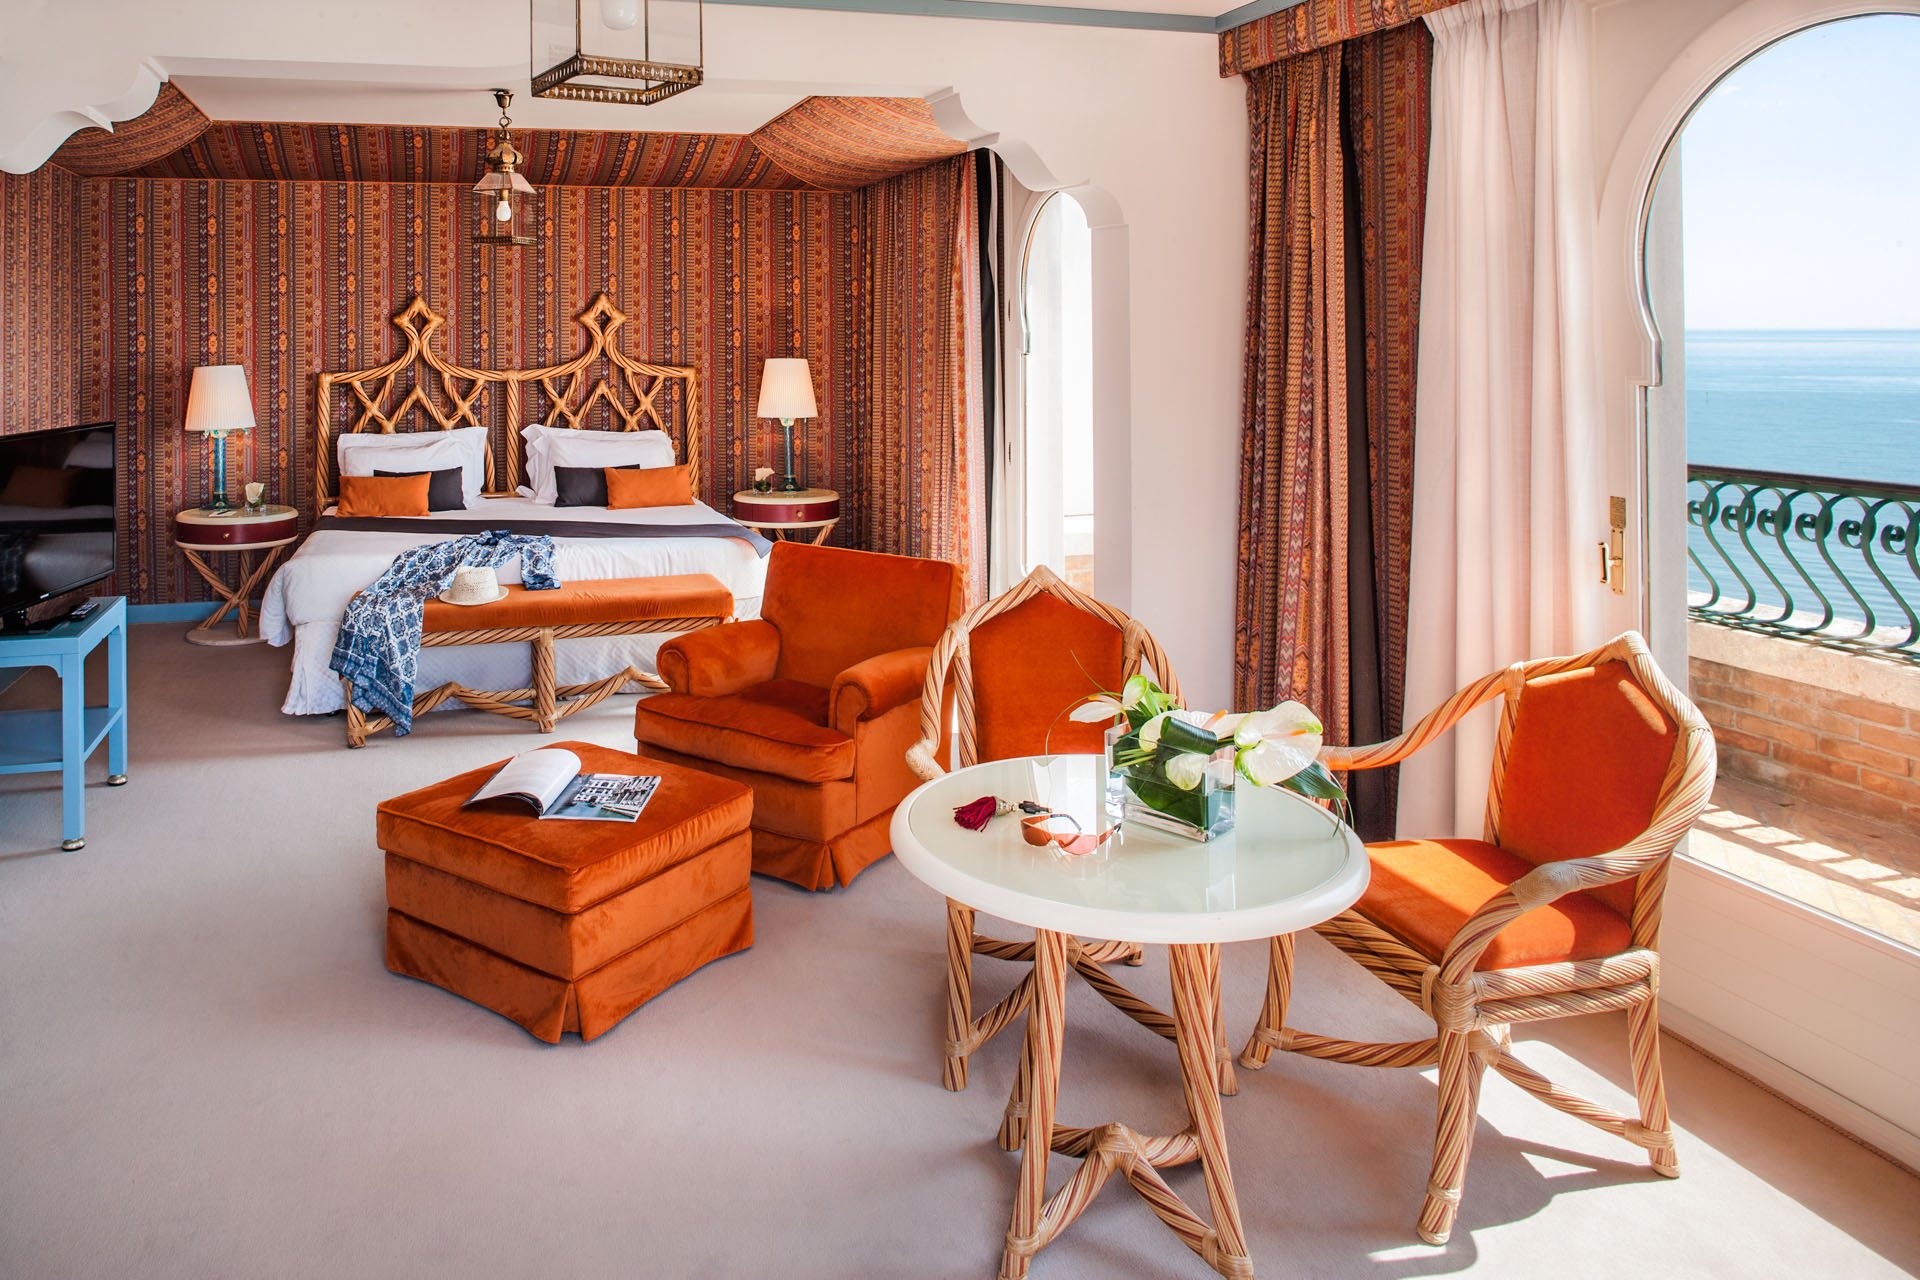 arredi camera arancione interior design contract hotel excelsior venezia lido cinque stelle lusso resort arredi realizzati dal gruppo rodi 